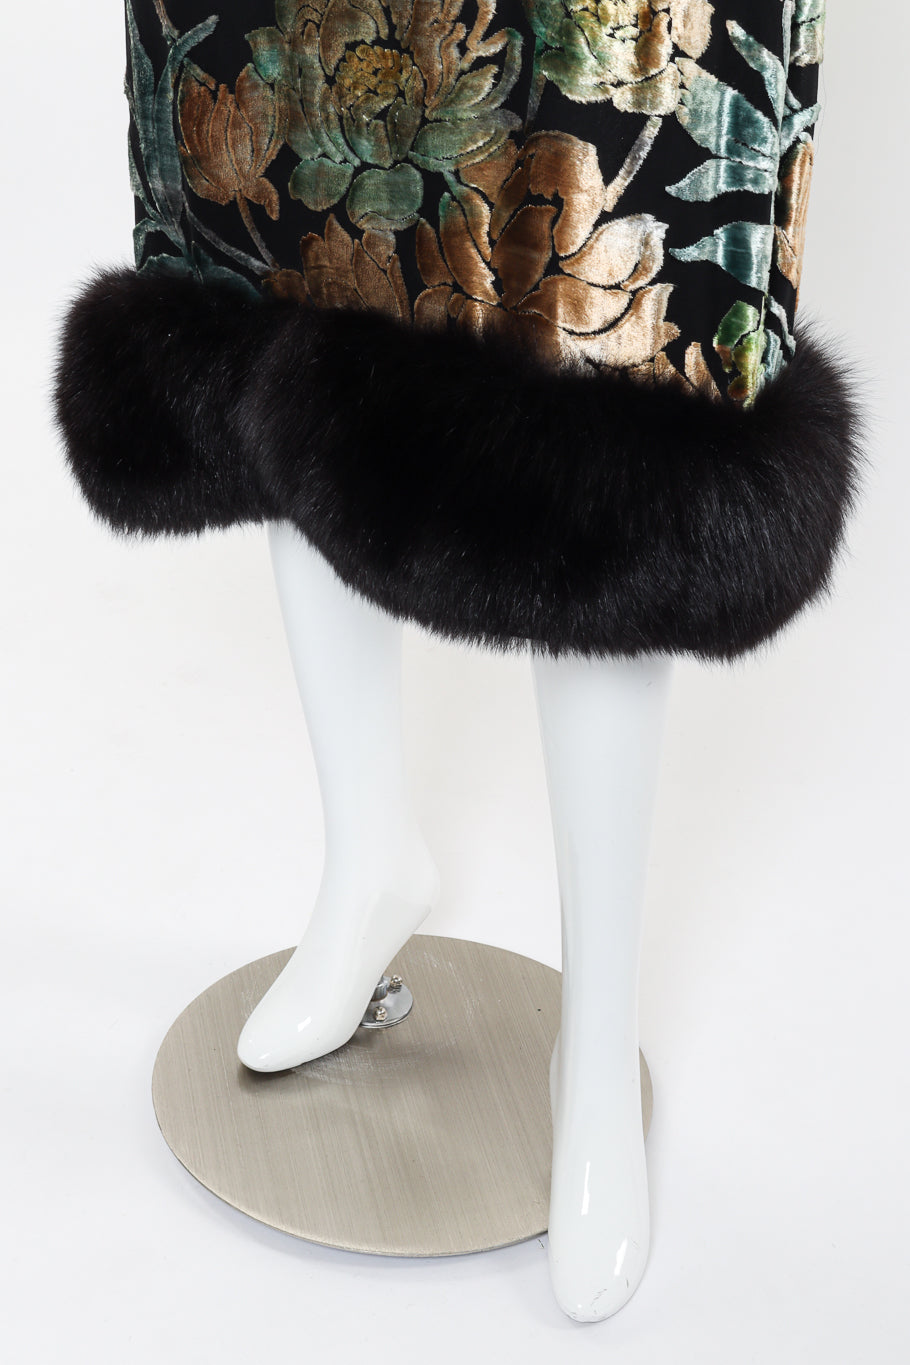 Vintage Pauline Trigere Burnout Floral Fur Dress hem on mannequin closeup @recessla